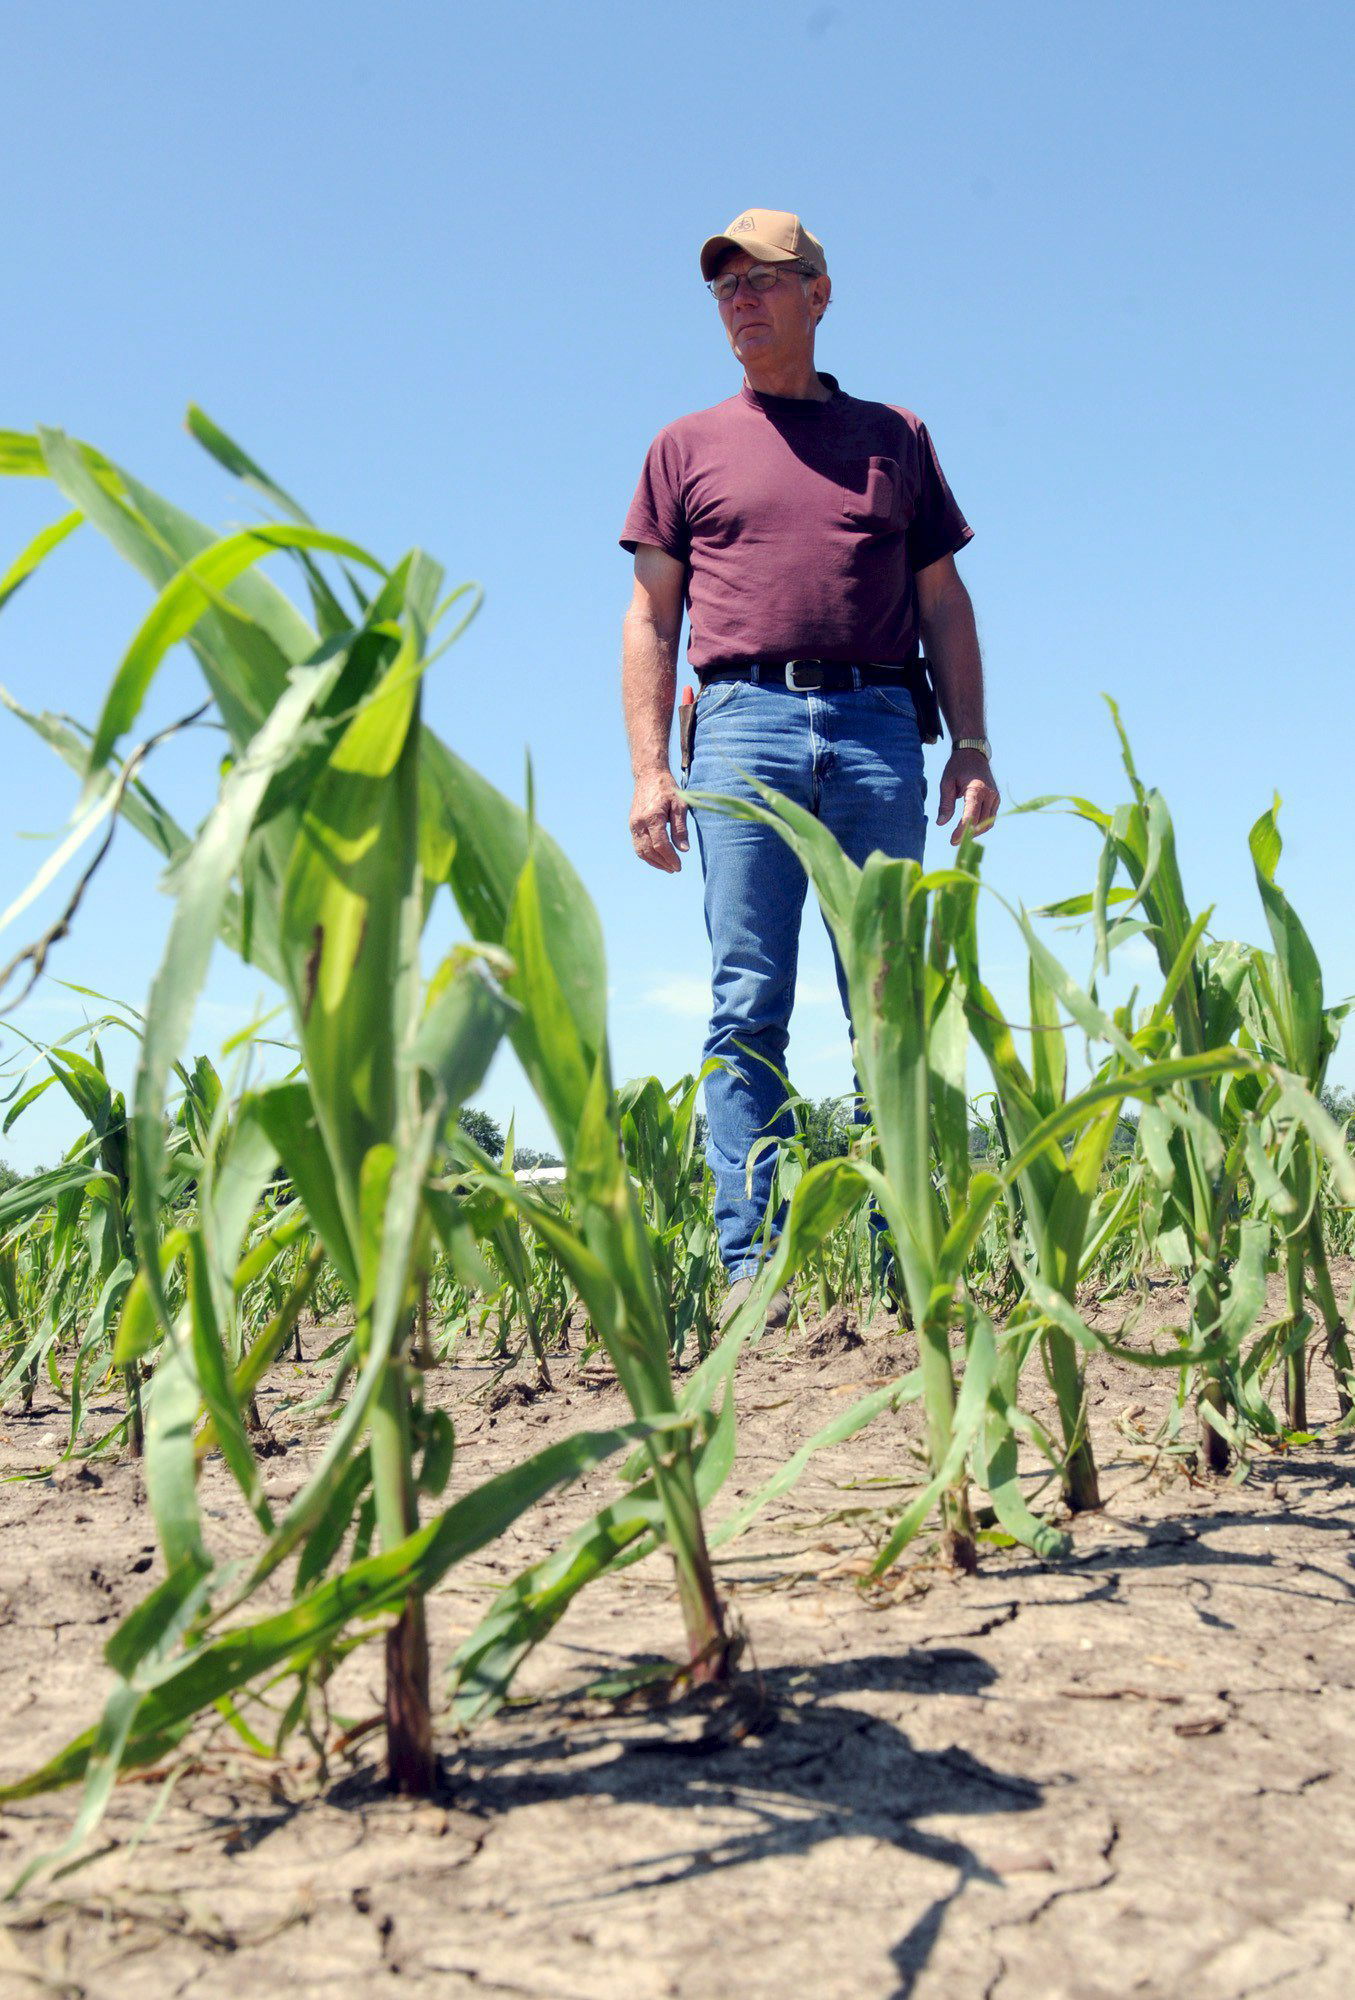 EEUU - INUNDACIONES:SPX125 - BLAIRSTOW (ESTADOS UNIDOS), 18/06/08.- El agricultor Darwin Vogt camina hoy, 18 de junio de 2008, por los surcos de su cultivo de maíz en la localidad de Blairstown, Iowa (EEUU), afectado por la crecida del río Mississippi y por las lluvias continuas en el último mes. Solo en el estado de Iowa, se perdió la producción de unos 5 millones de cultivos de maíz y soya, entre otros. 